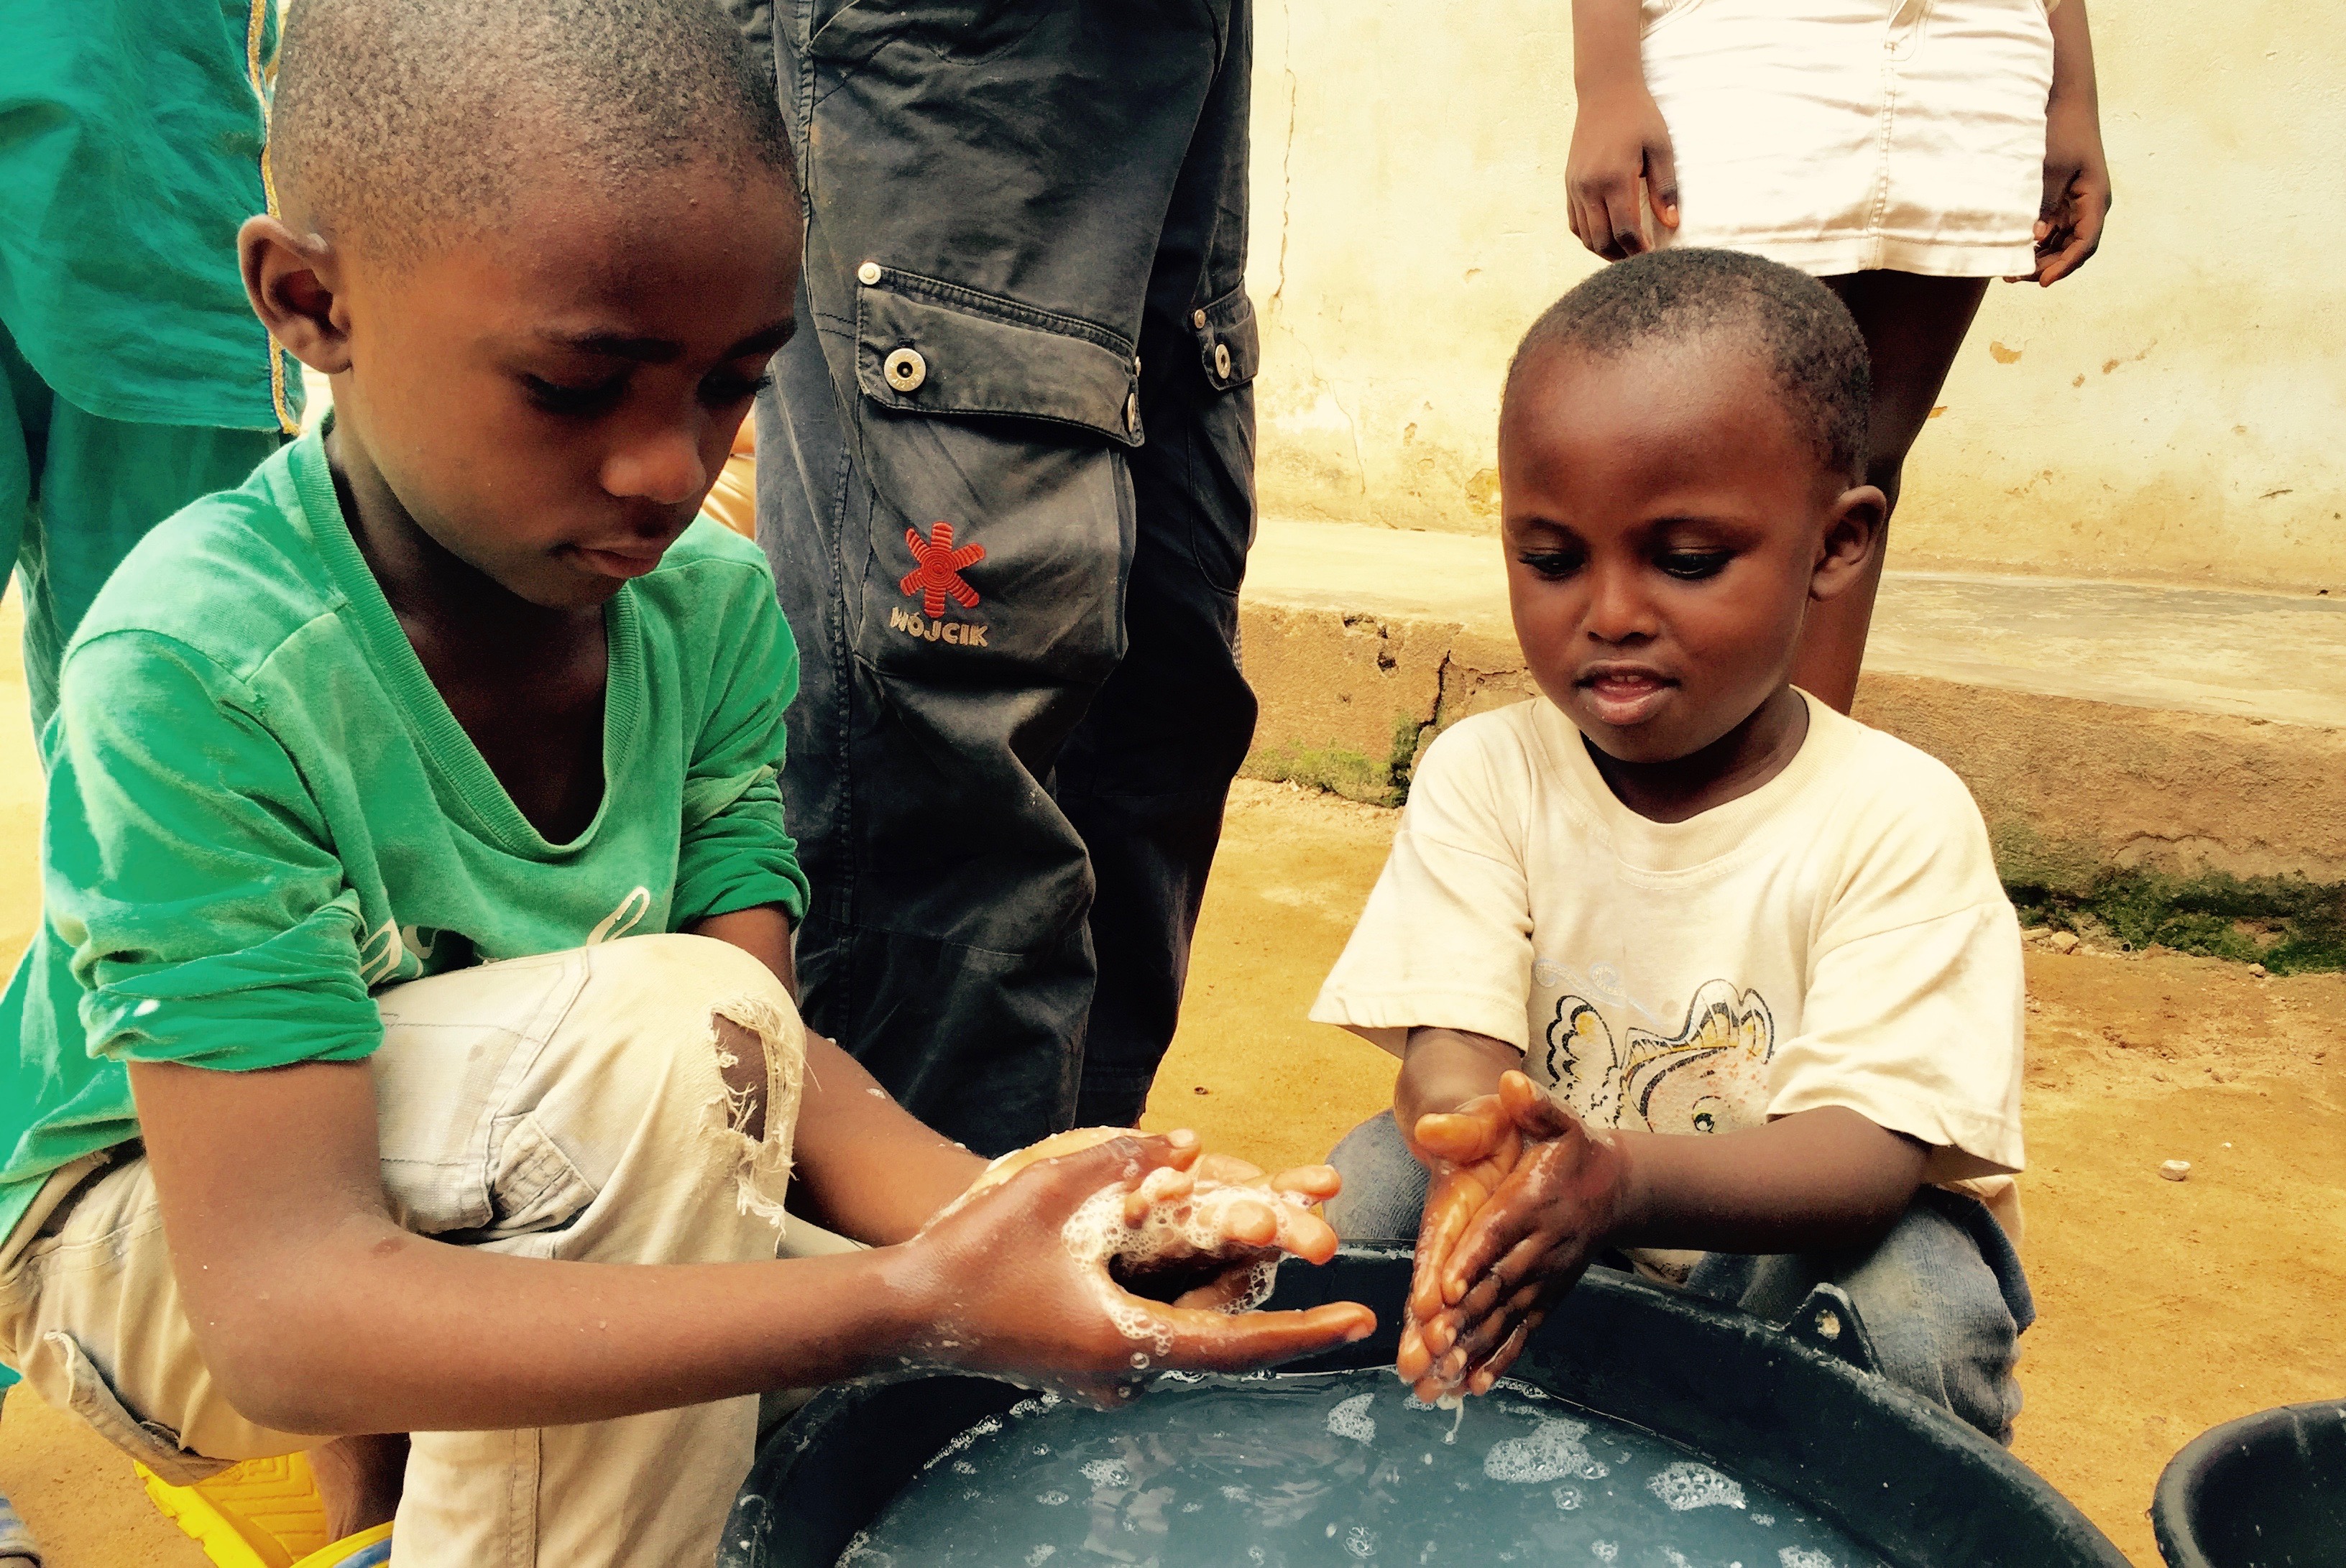 La distribution de savons dans des régions en proie à la pauvreté améliore considérablement l’hygiène des mains sur place. 